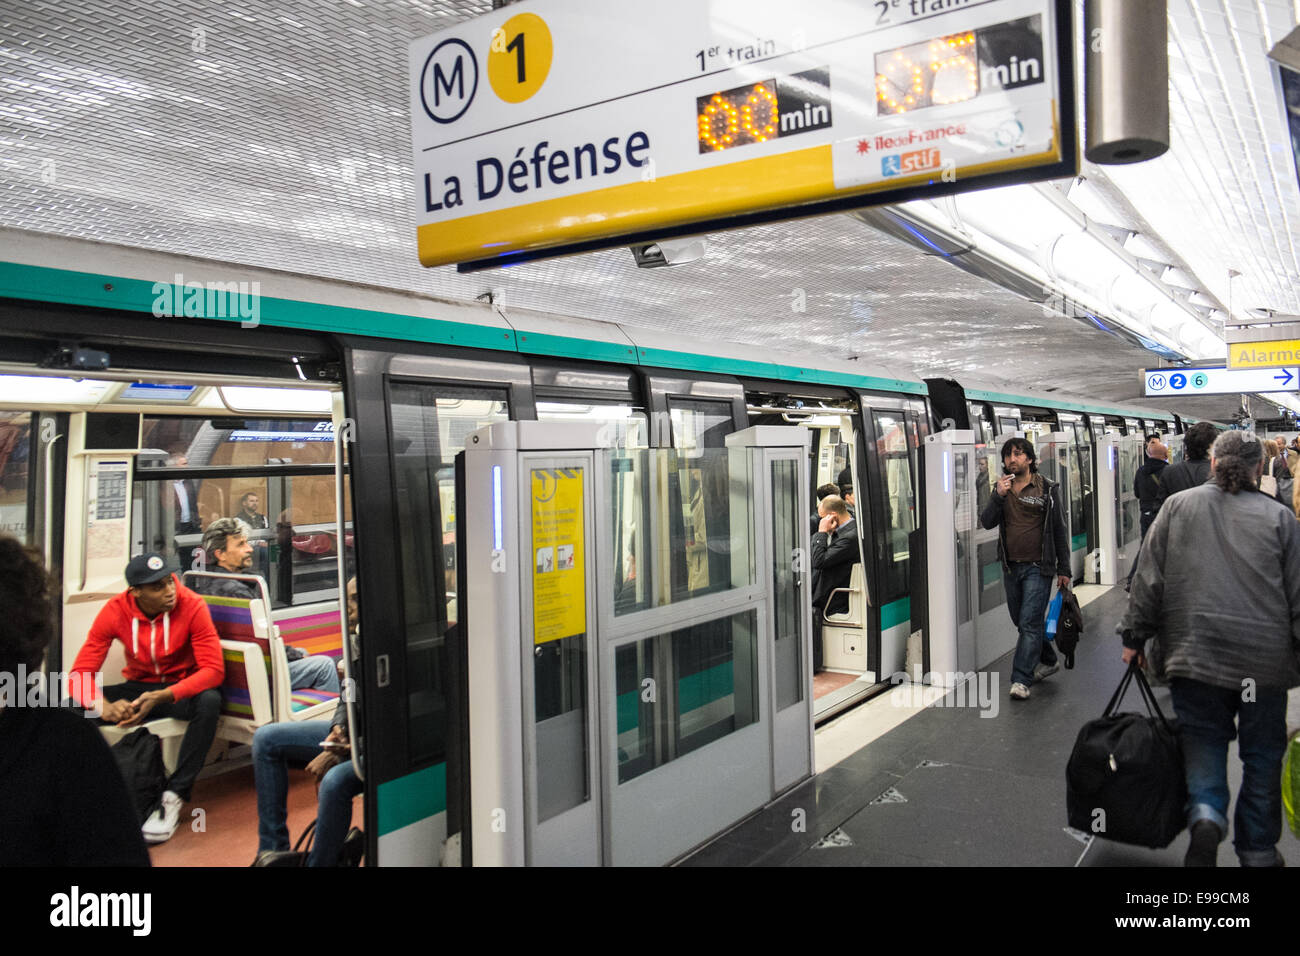 Paris Metro Line | vlr.eng.br